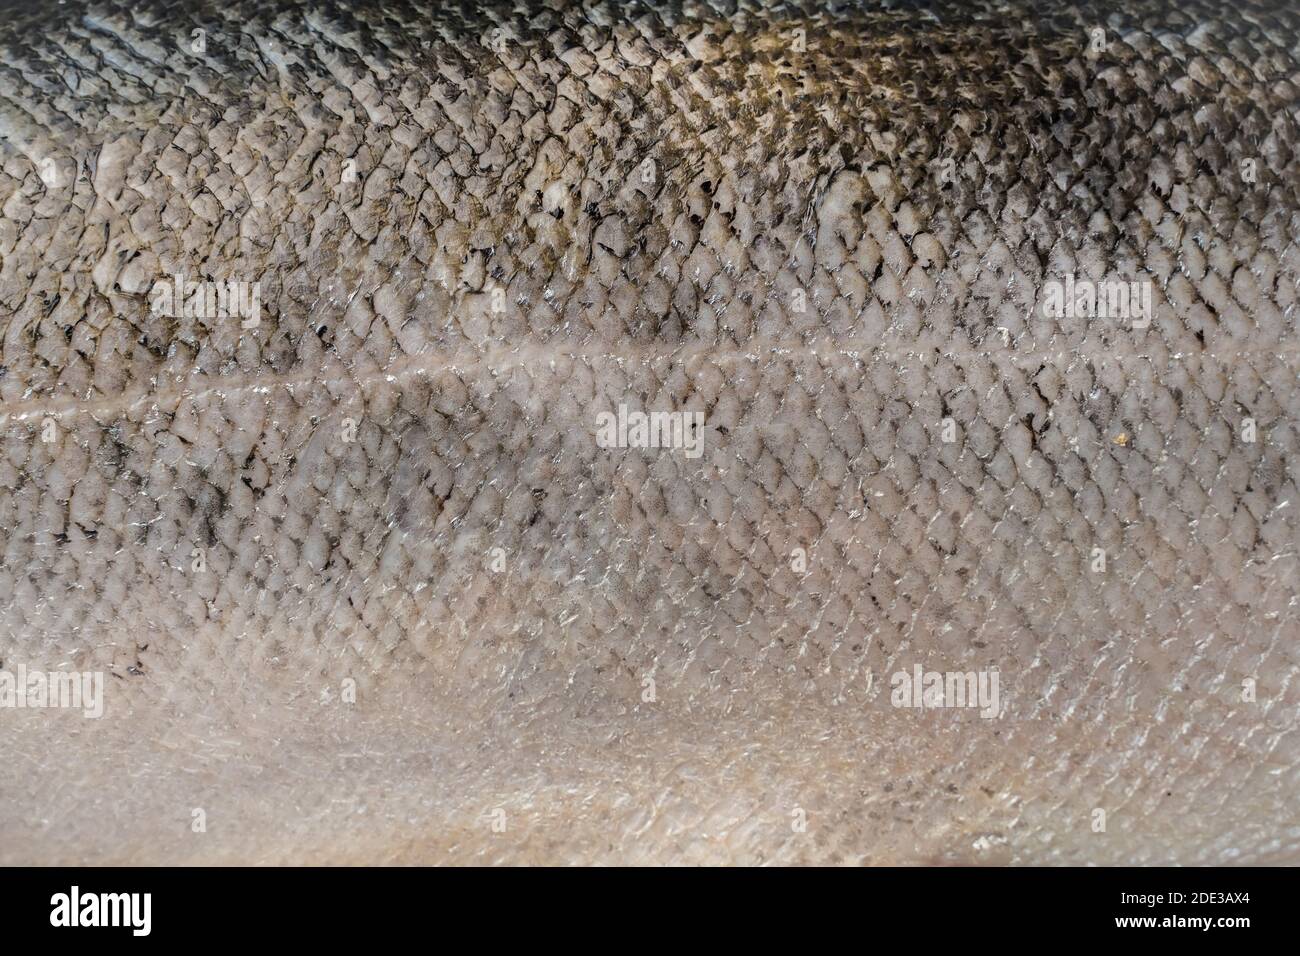 Frischer großer Lachs. Makroaufnahme mit Lachsschuppen. Stockfoto